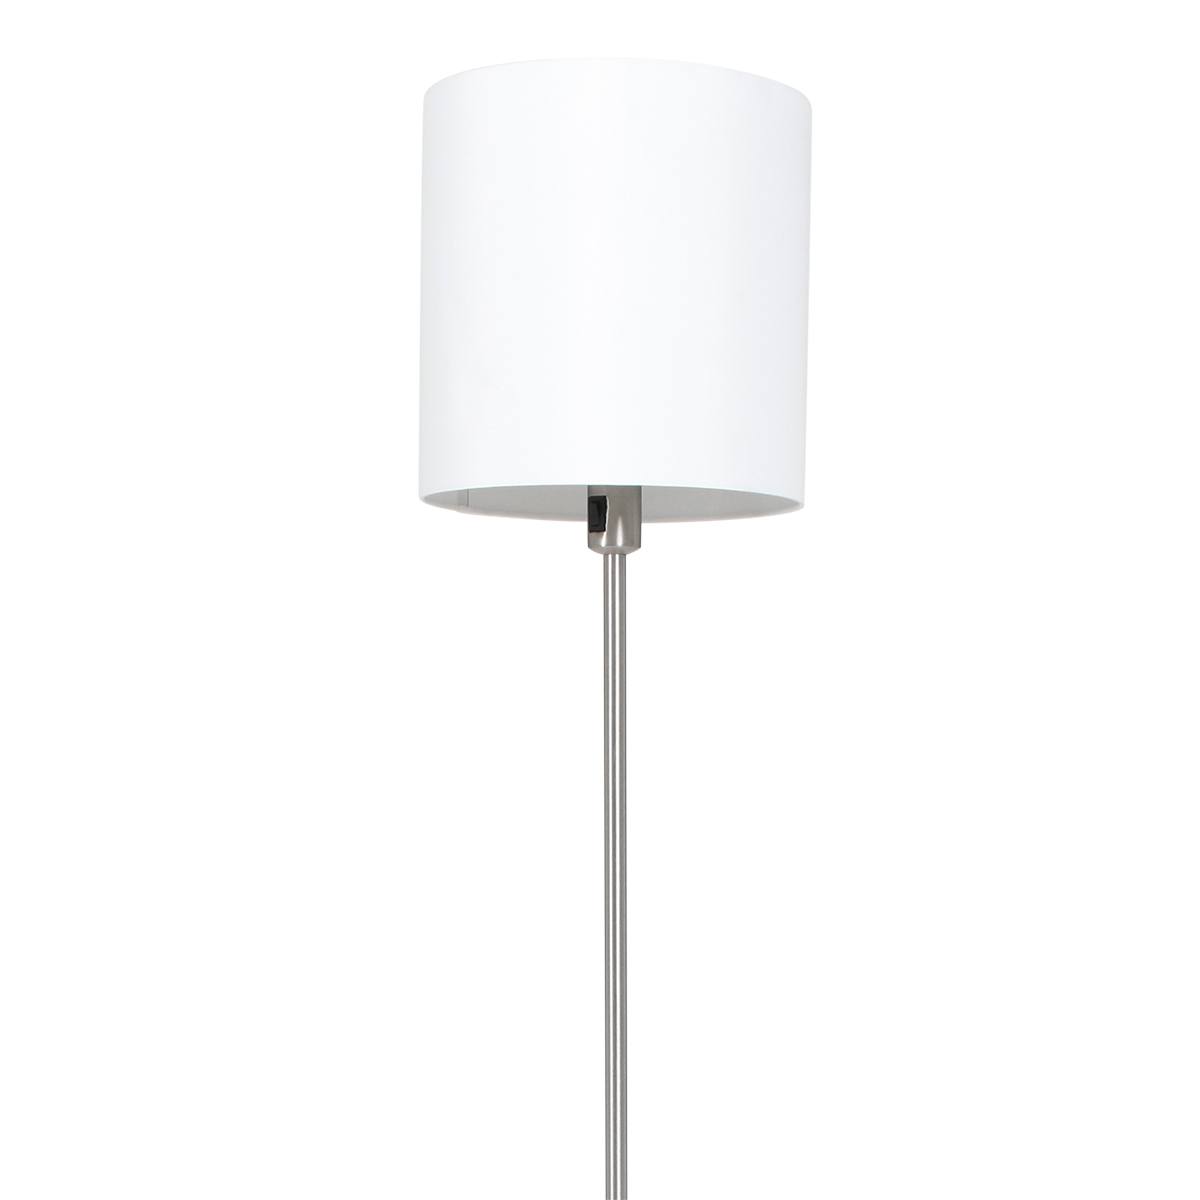 Vloerlamp, staal inclusief witte linnen kap, 160 cm hoog, Noor, 1564ST, Mexlite. De lamp te met een schakelaar op het armatuur. - - Webo Verlichting